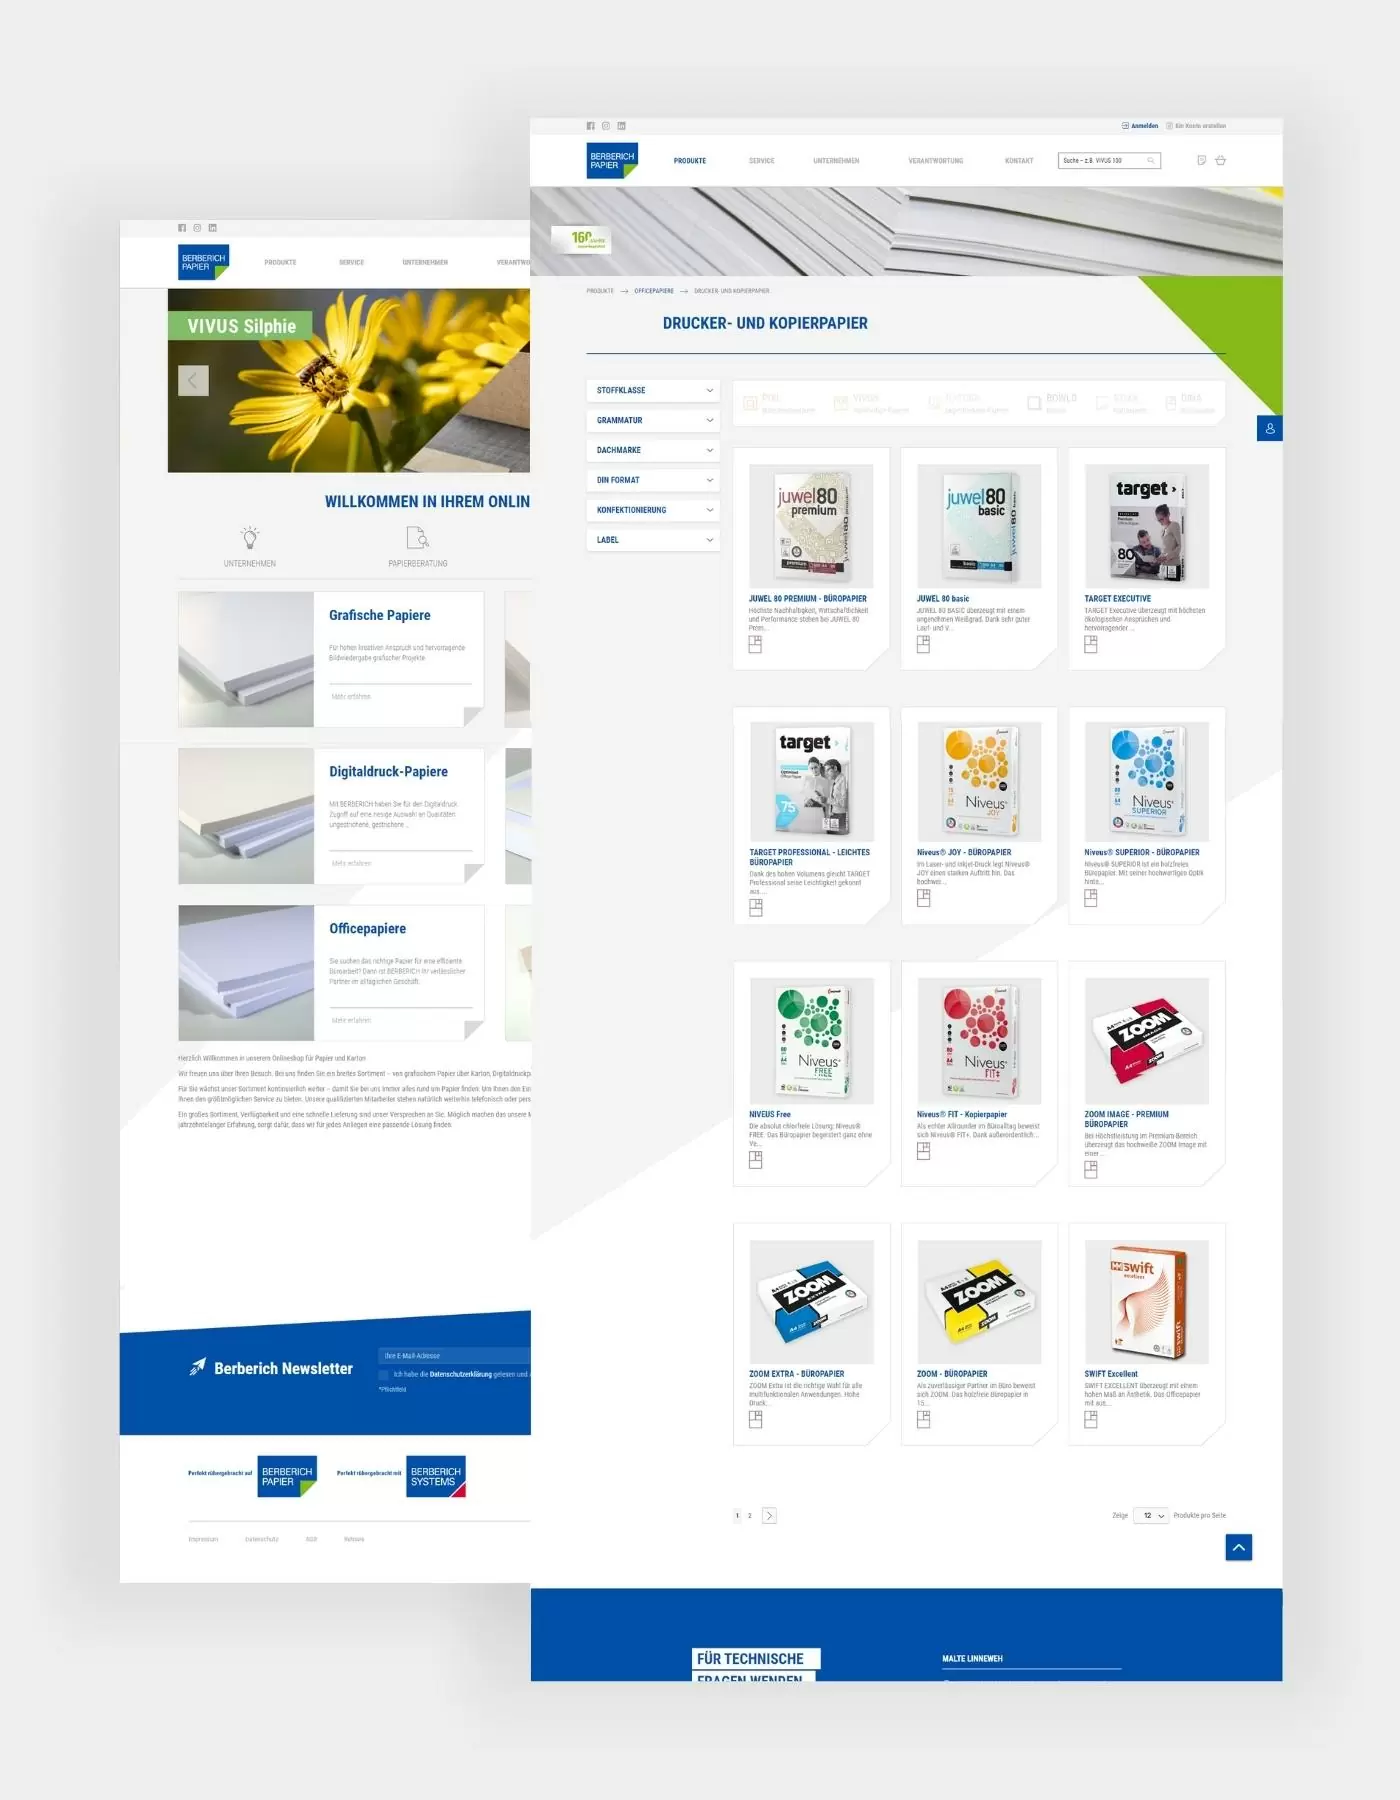 Produktlisting von Drucker- und Kopierpapier im Berberich Online-Shop und die Startseite